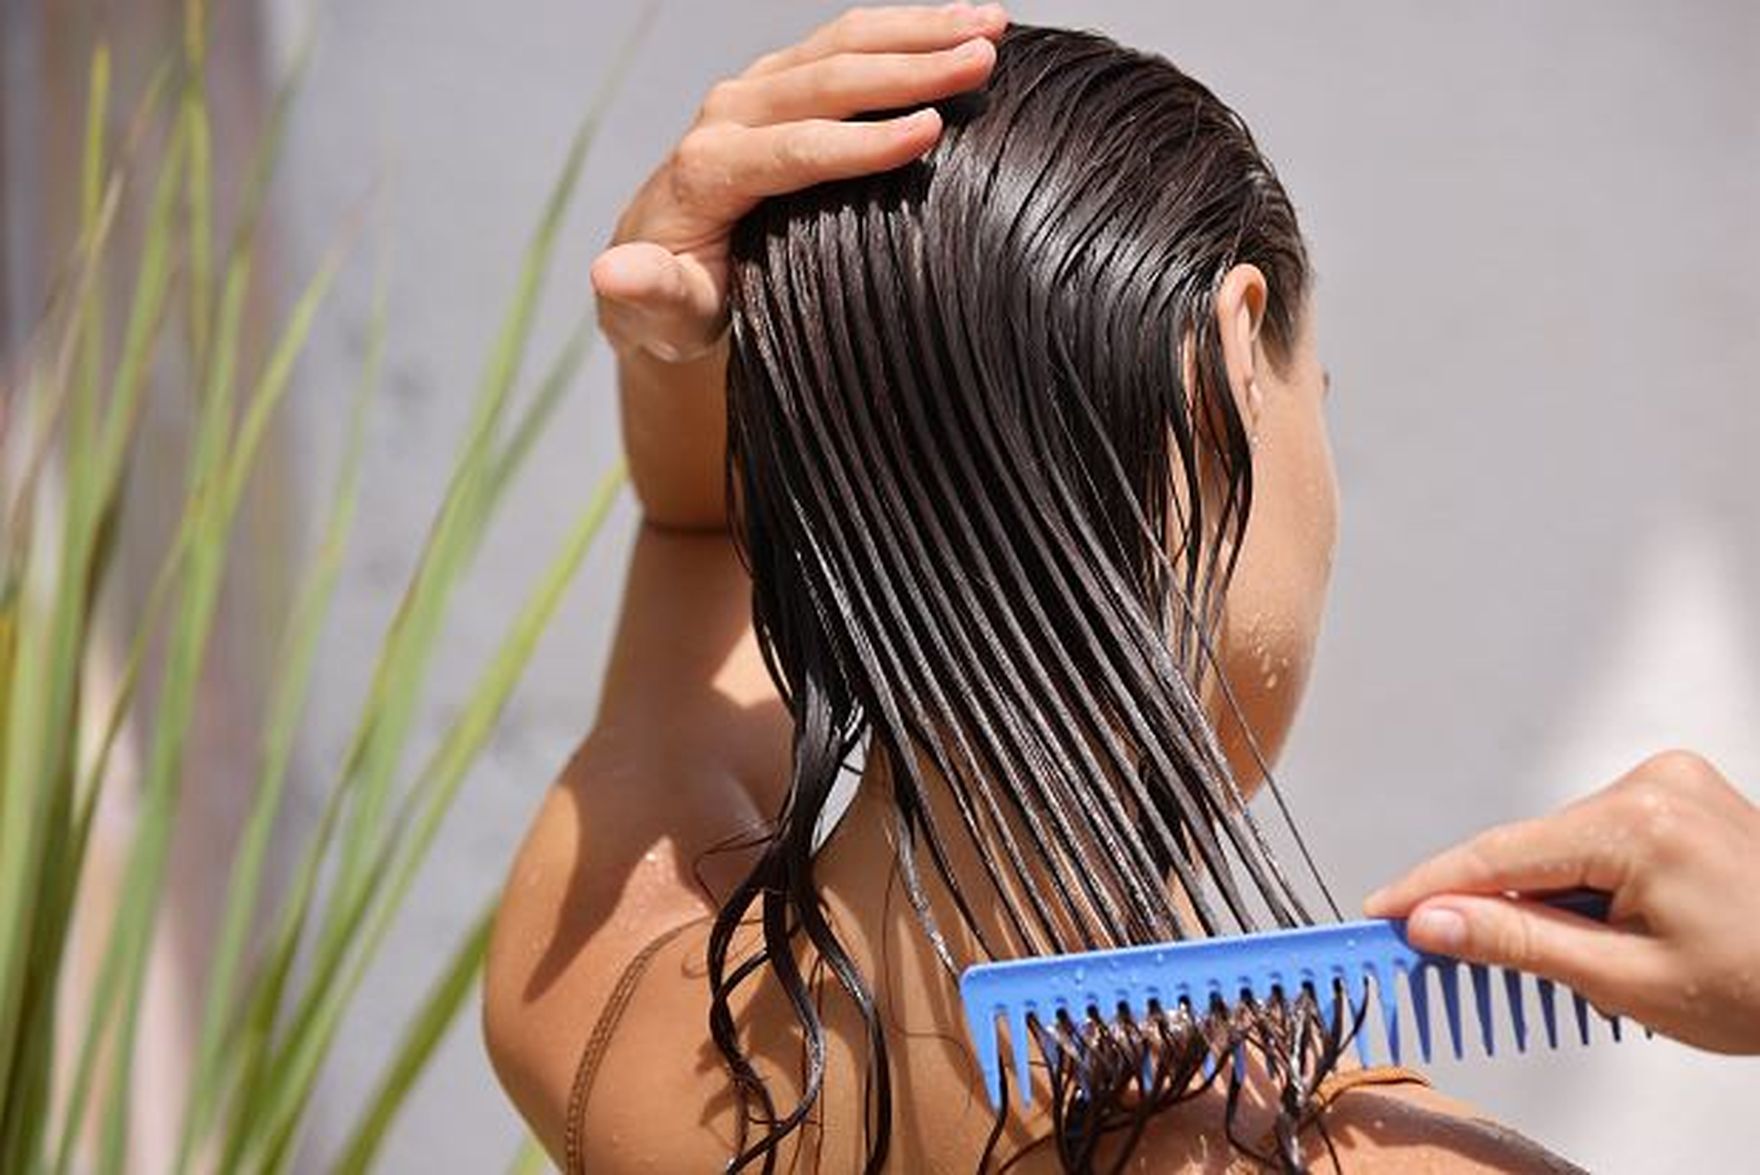 Jak przywrócić włosom zdrowy blask? Kosmetyki do włosów z olejkiem jojoba bio od Yves Rocher są niedrogie, a skuteczne!